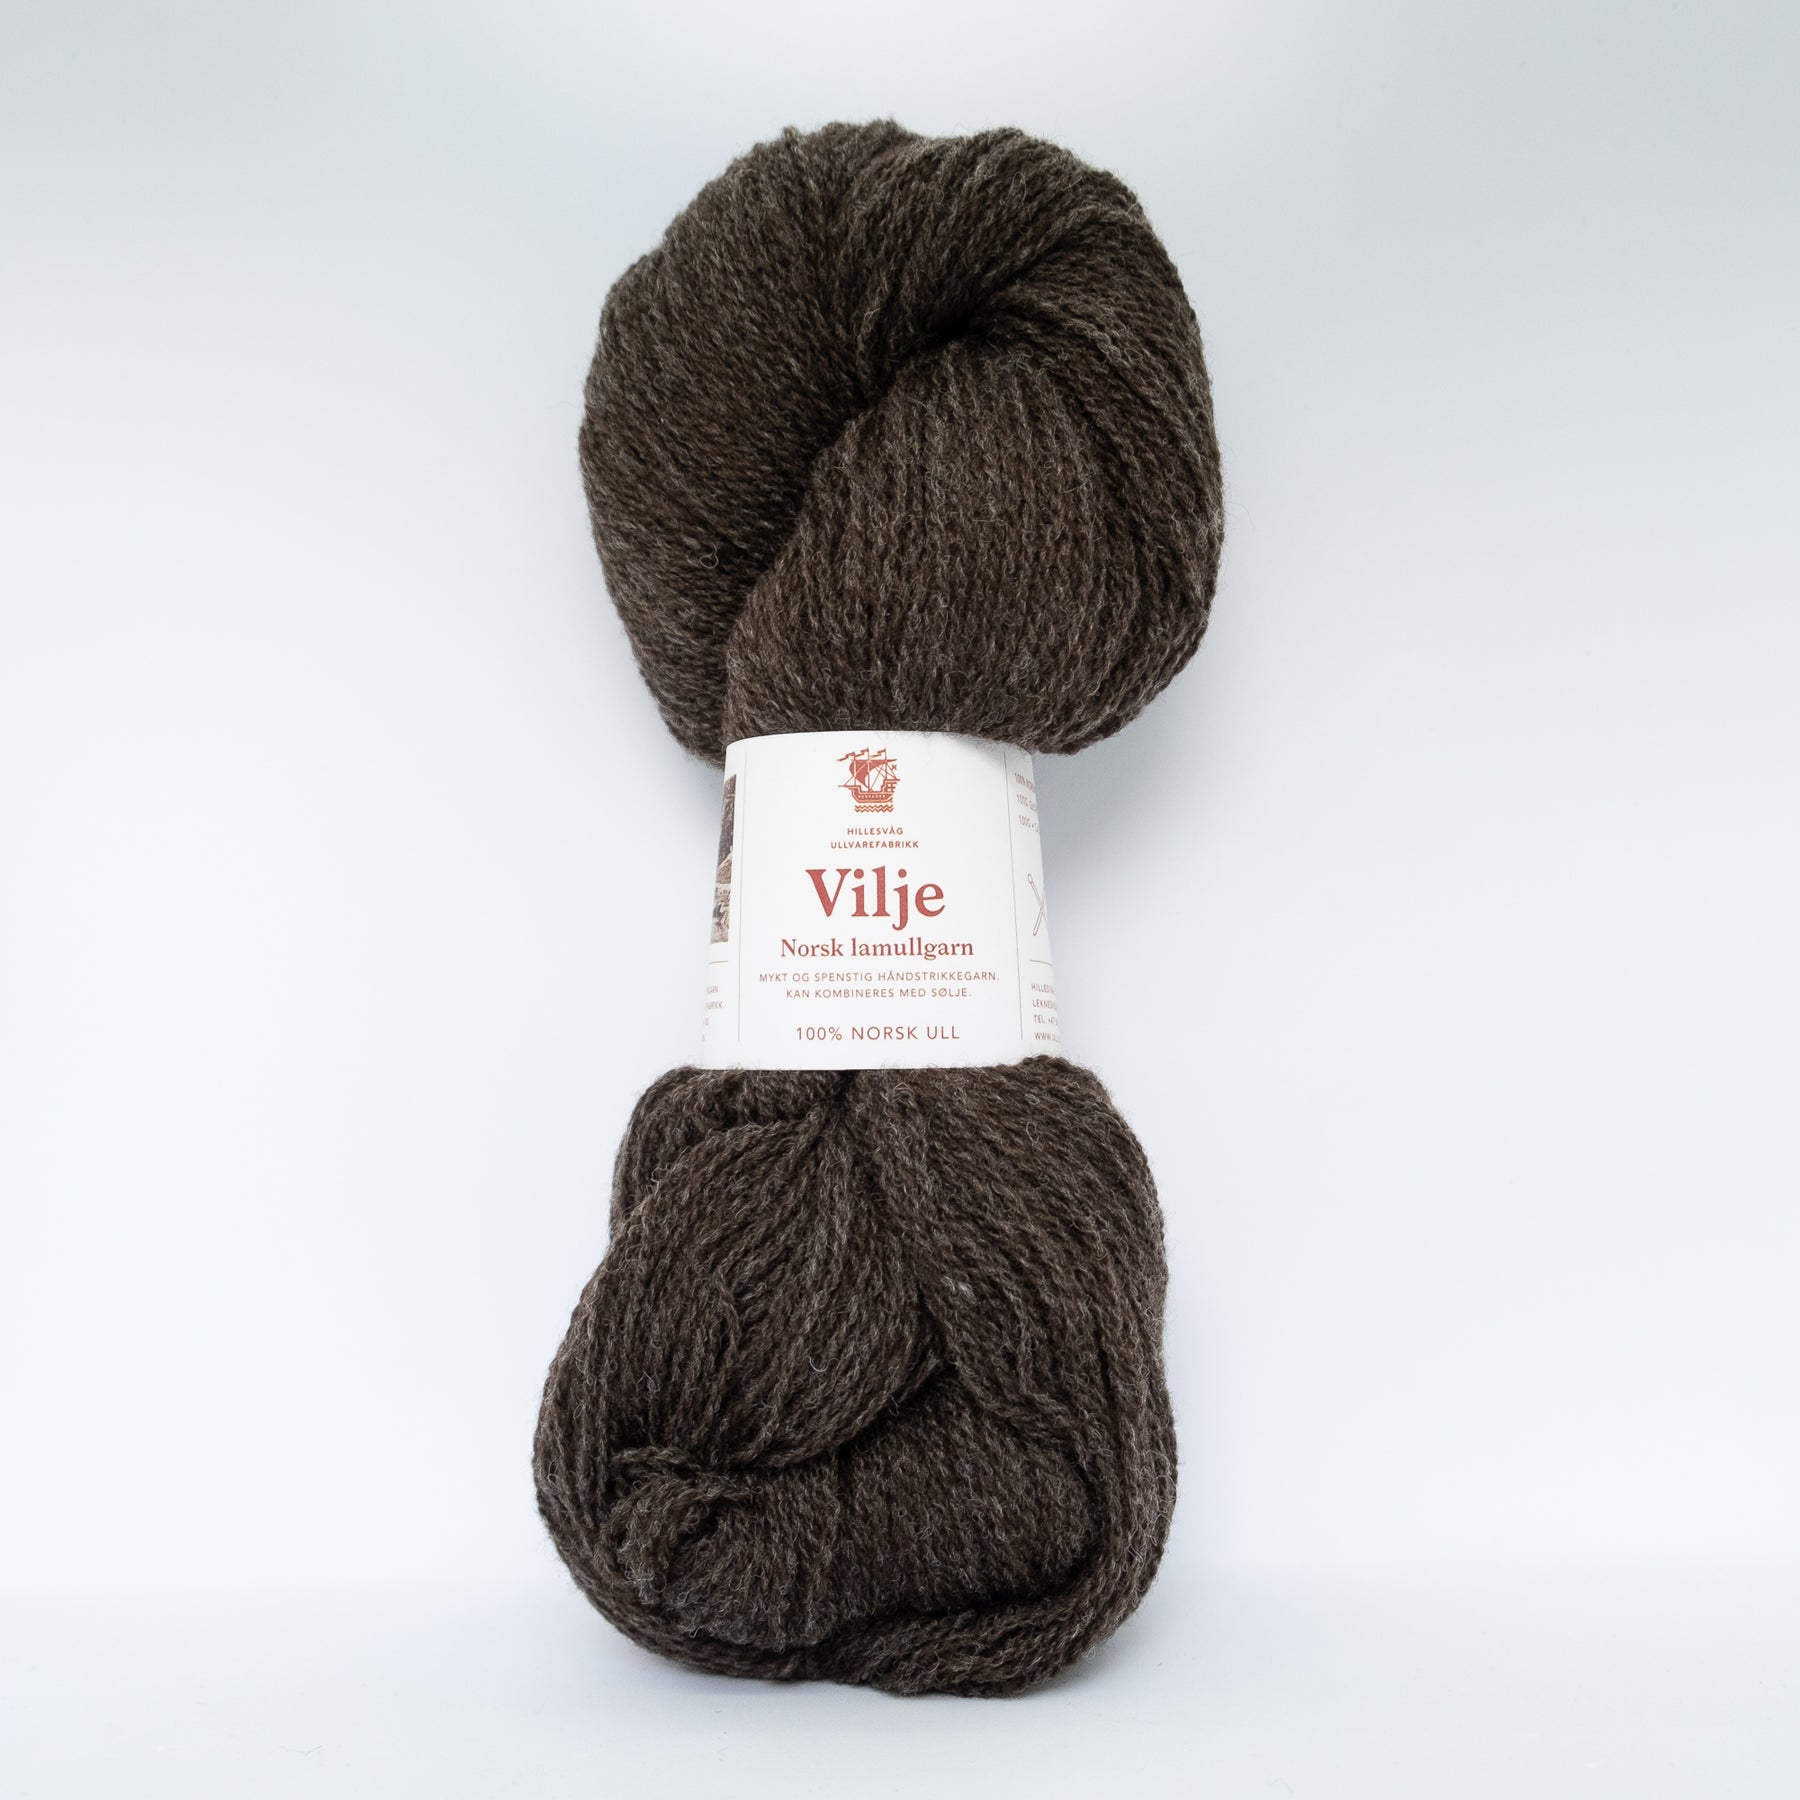 Vilje - mingled dark brown